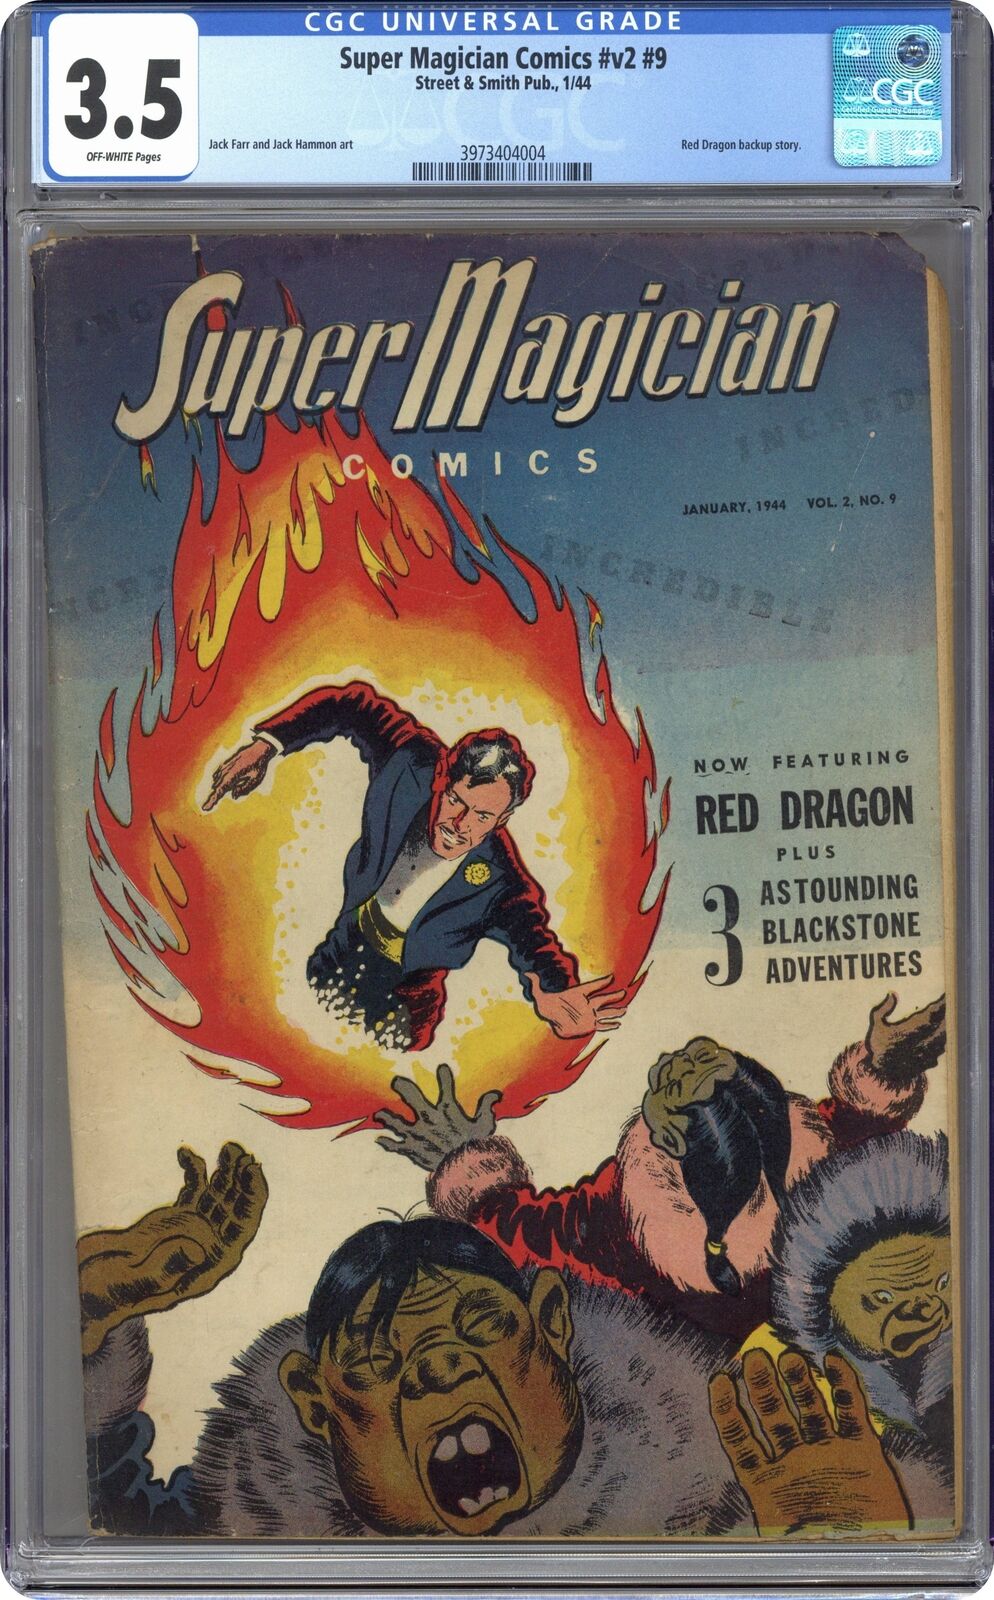 Super Magician Comics Vol. 2 #9 CGC 3.5 1944 3973404004